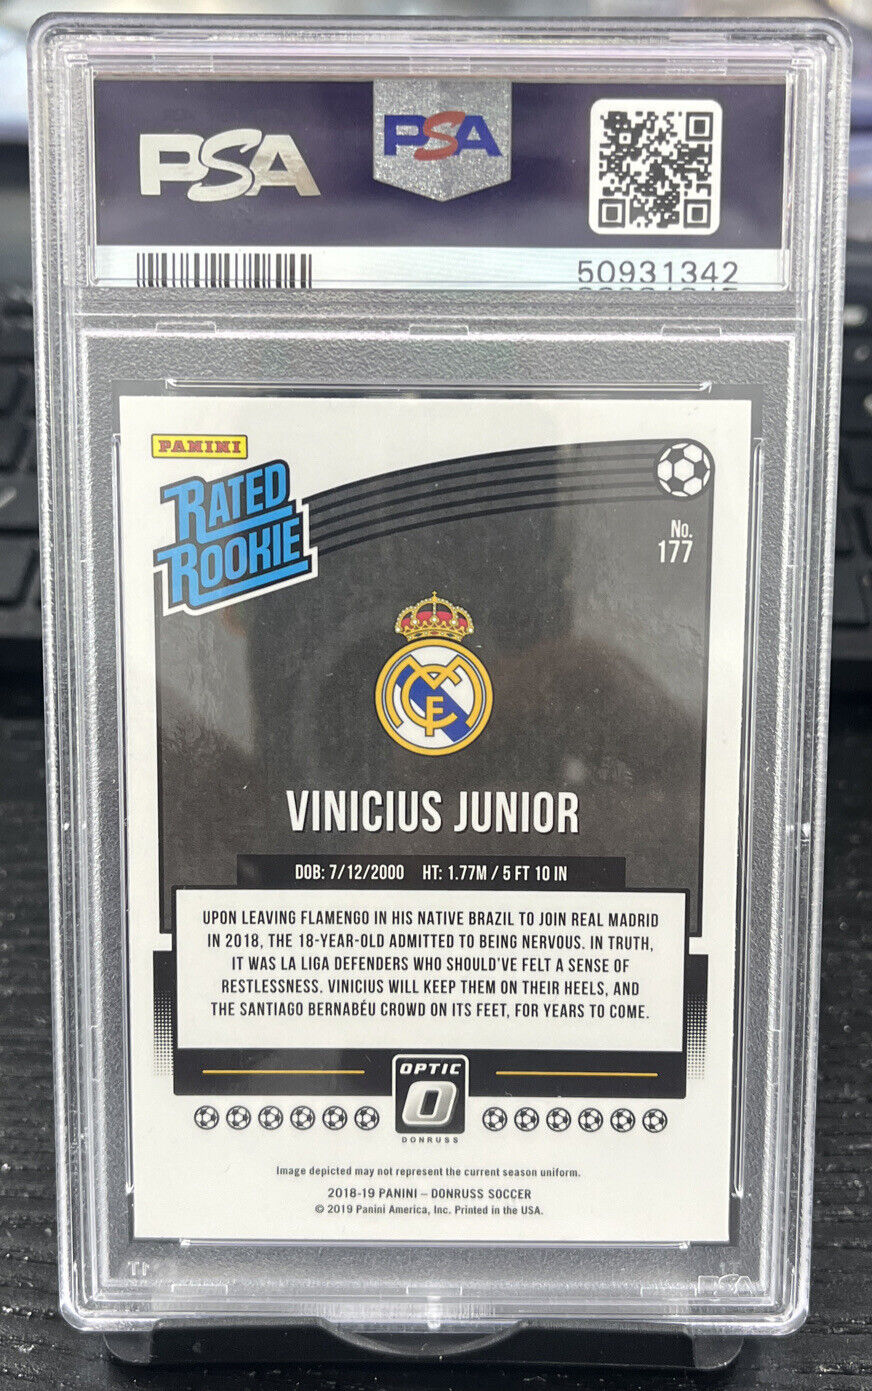 2018-19 Donruss Optic Soccer #177 Vinicius Junior RC Rookie PSA 10 GEM MINT